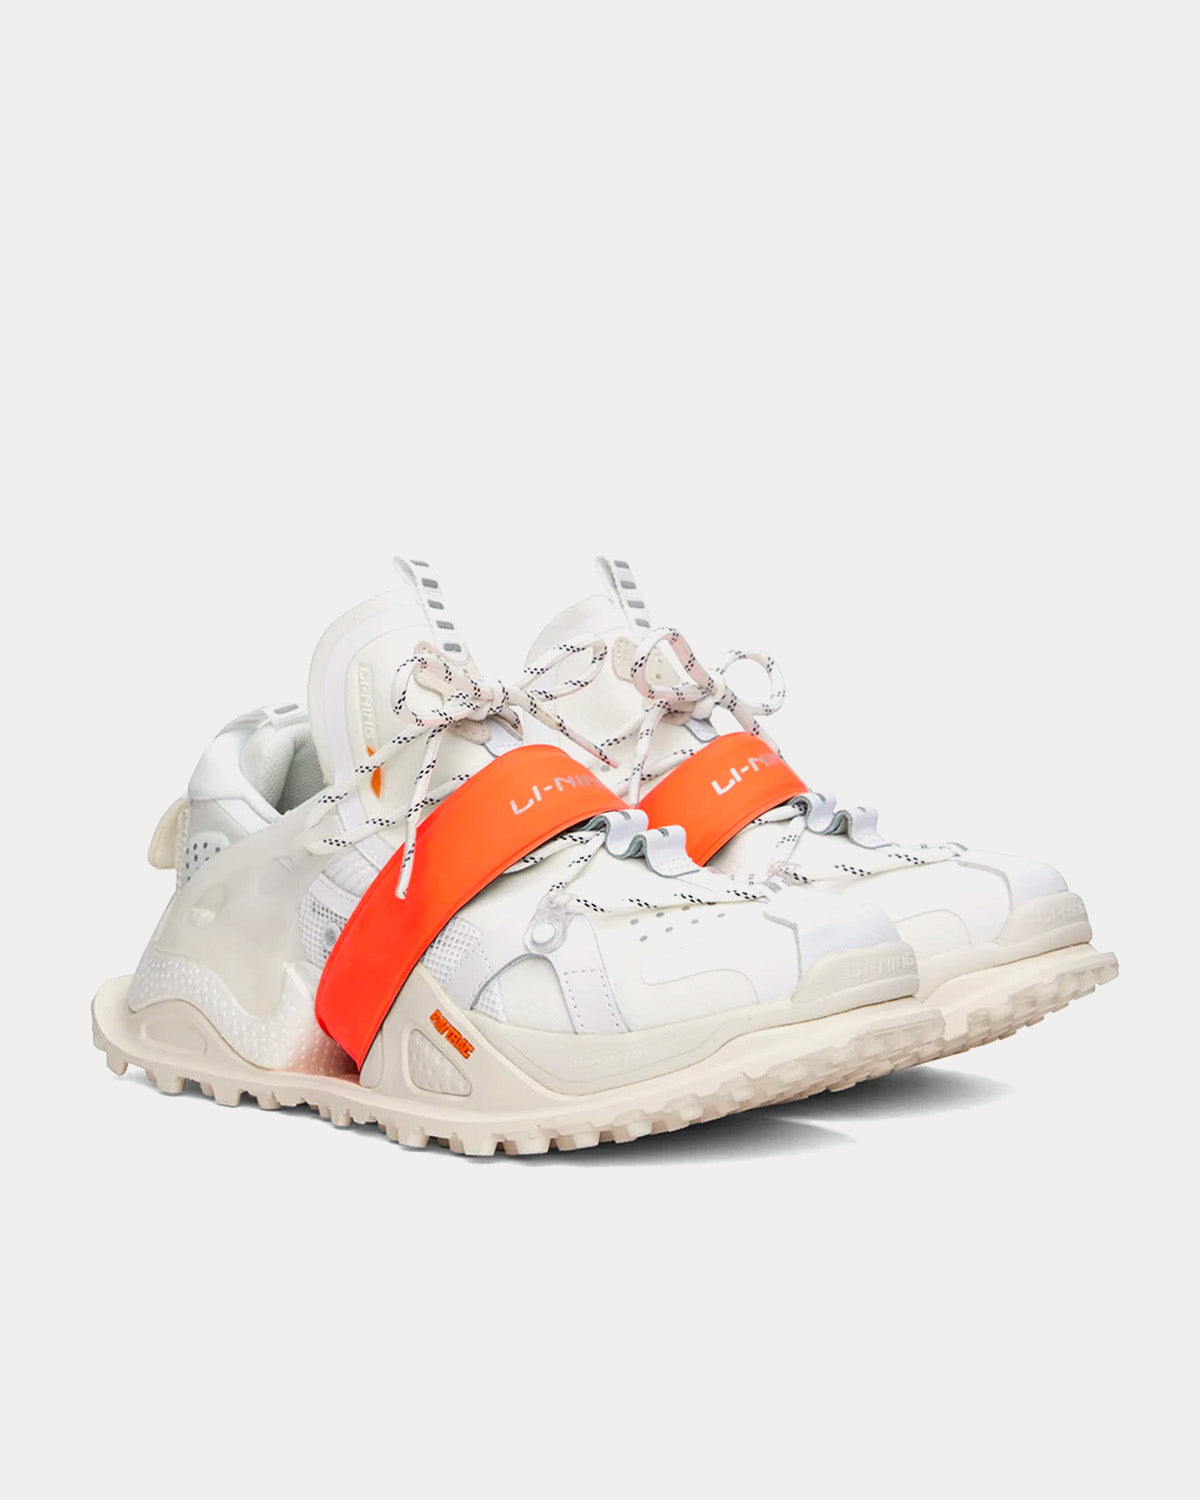 Li-Ning - Halo White / Orange Low Top Sneakers